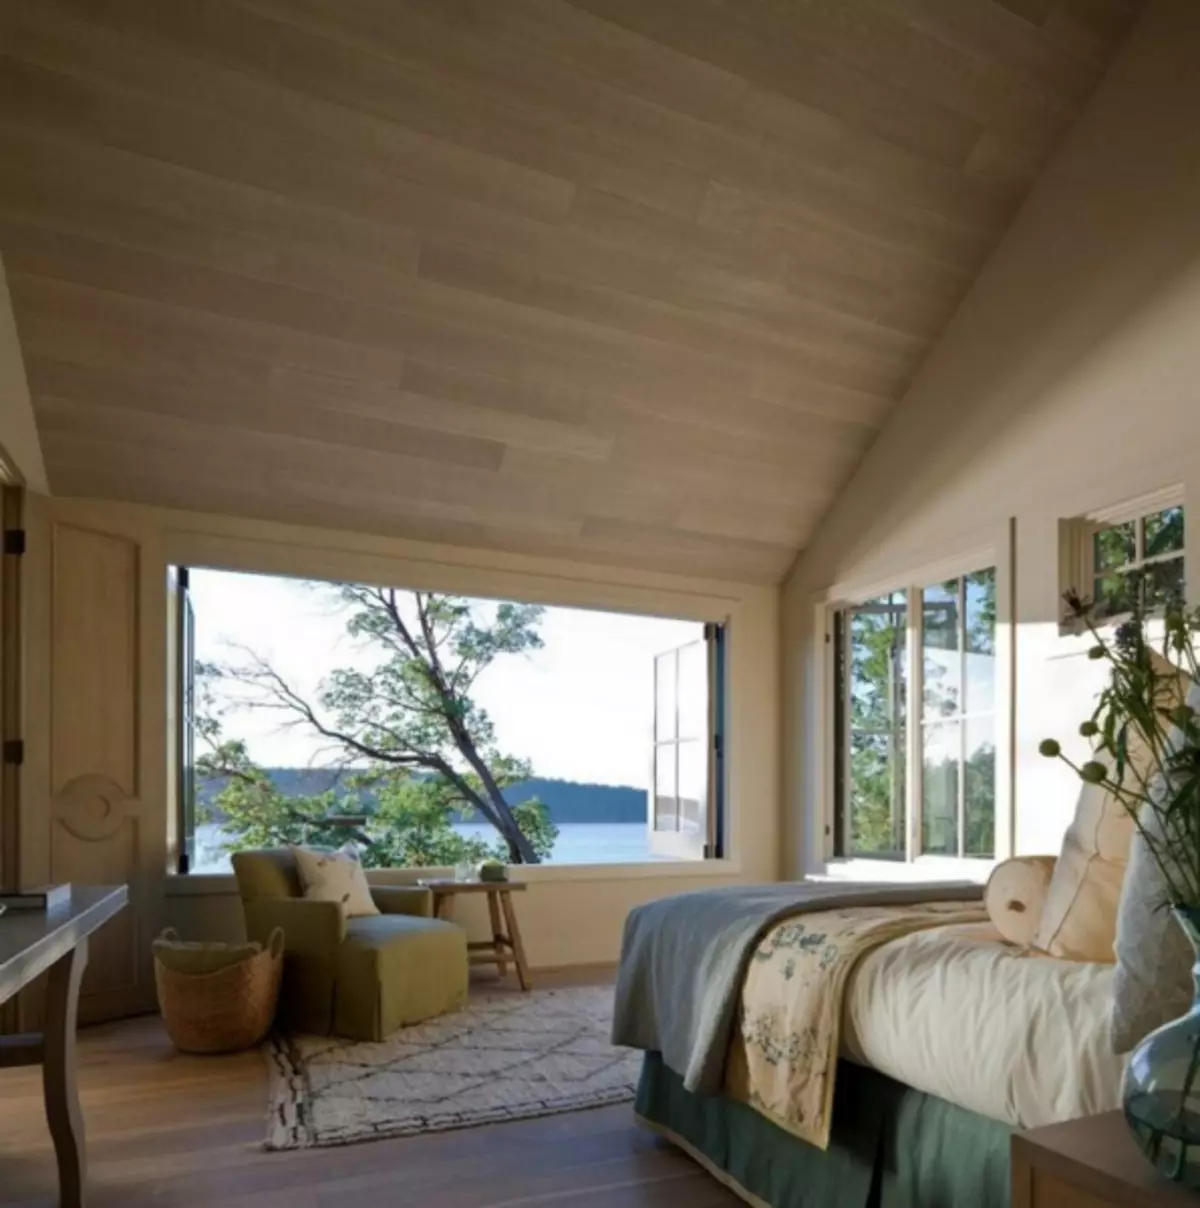 Panoramska okna v notranjosti: prostor v hiši in možnosti za oblikovanje in uporabo pri oblikovanju apartmaja (47 fotografij)